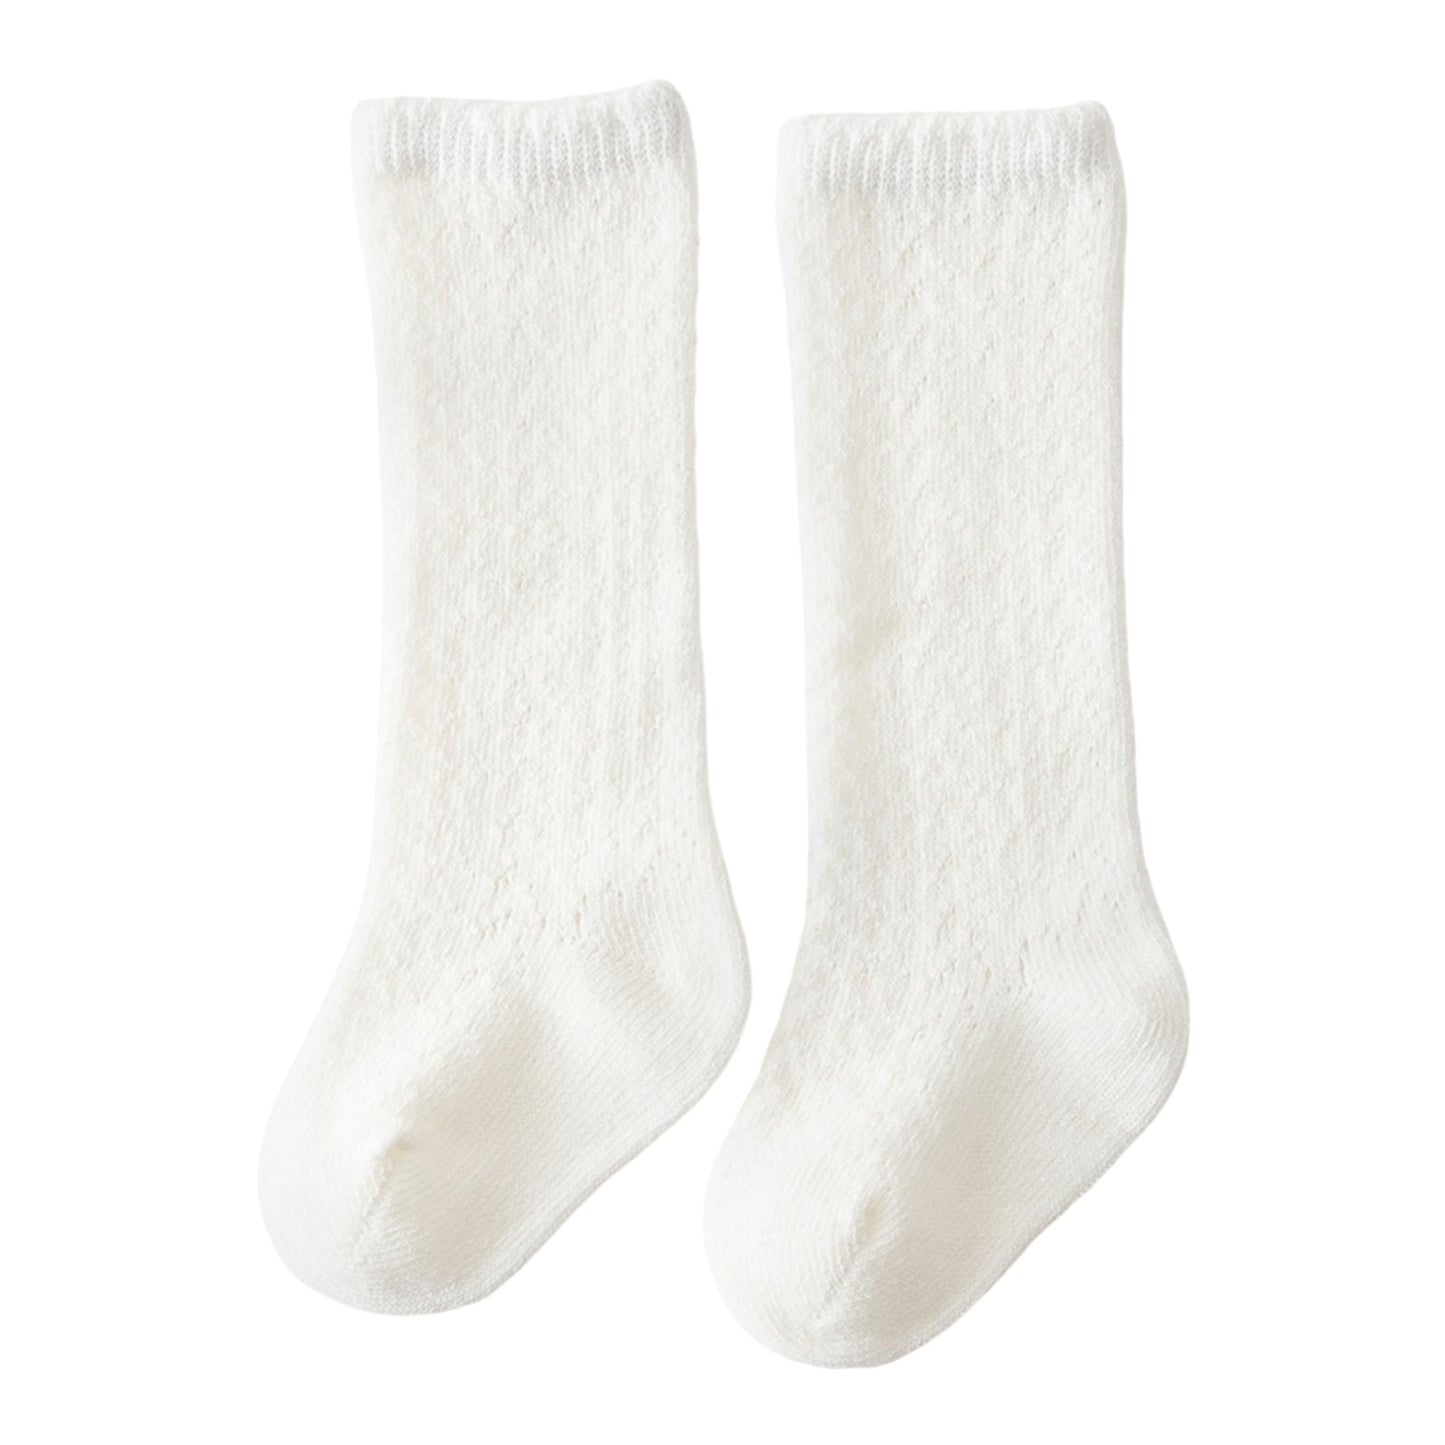 Crochet Knee High Socks - White